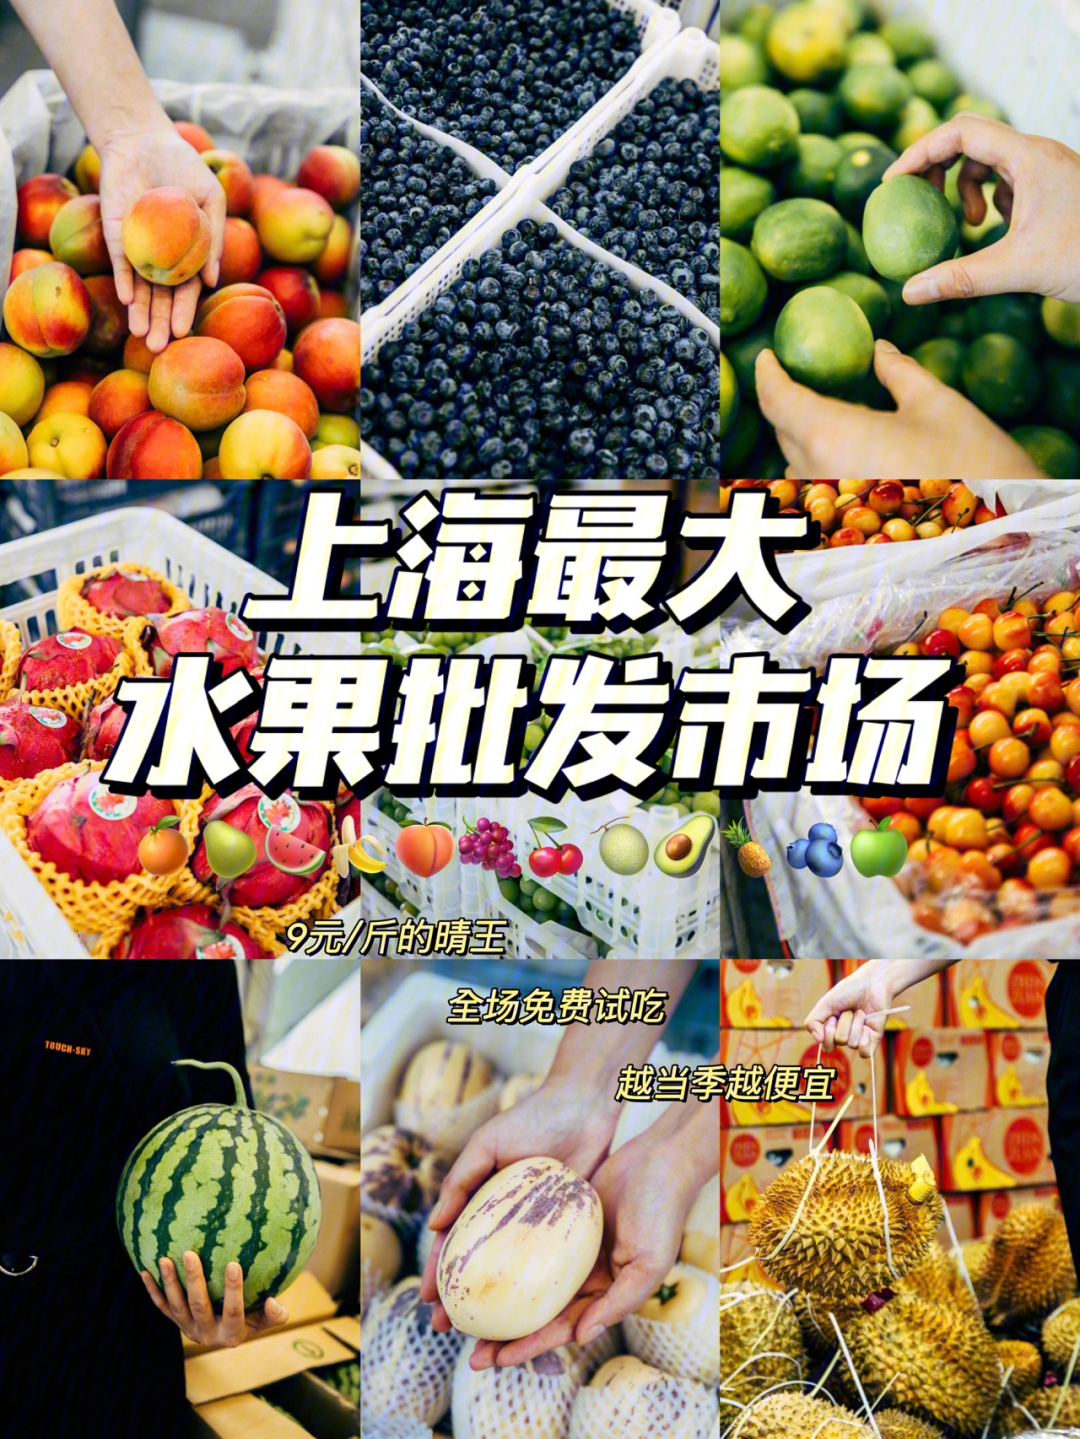 上海最大水果批发市场,99晴王909元/斤?